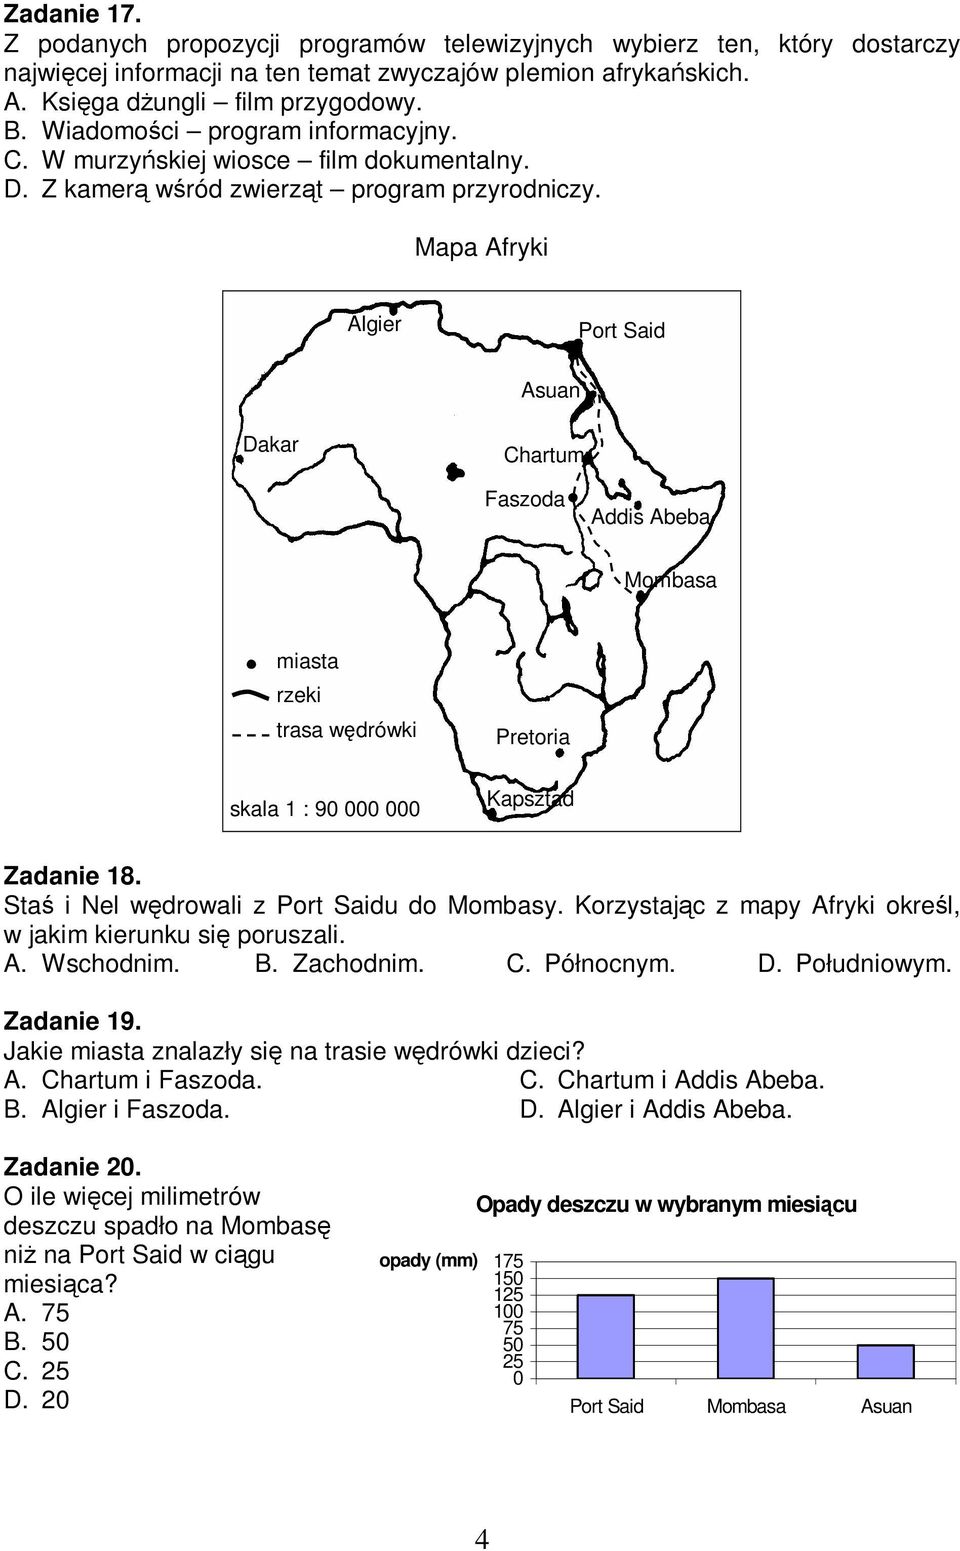 Mapa Afryki Algier Port Said Asuan Dakar Chartum Faszoda Addis Abeba Mombasa miasta rzeki trasa wdrówki skala 1 : 90 000 000 Pretoria Kapsztad Zadanie 18. Sta i Nel wdrowali z Port Saidu do Mombasy.